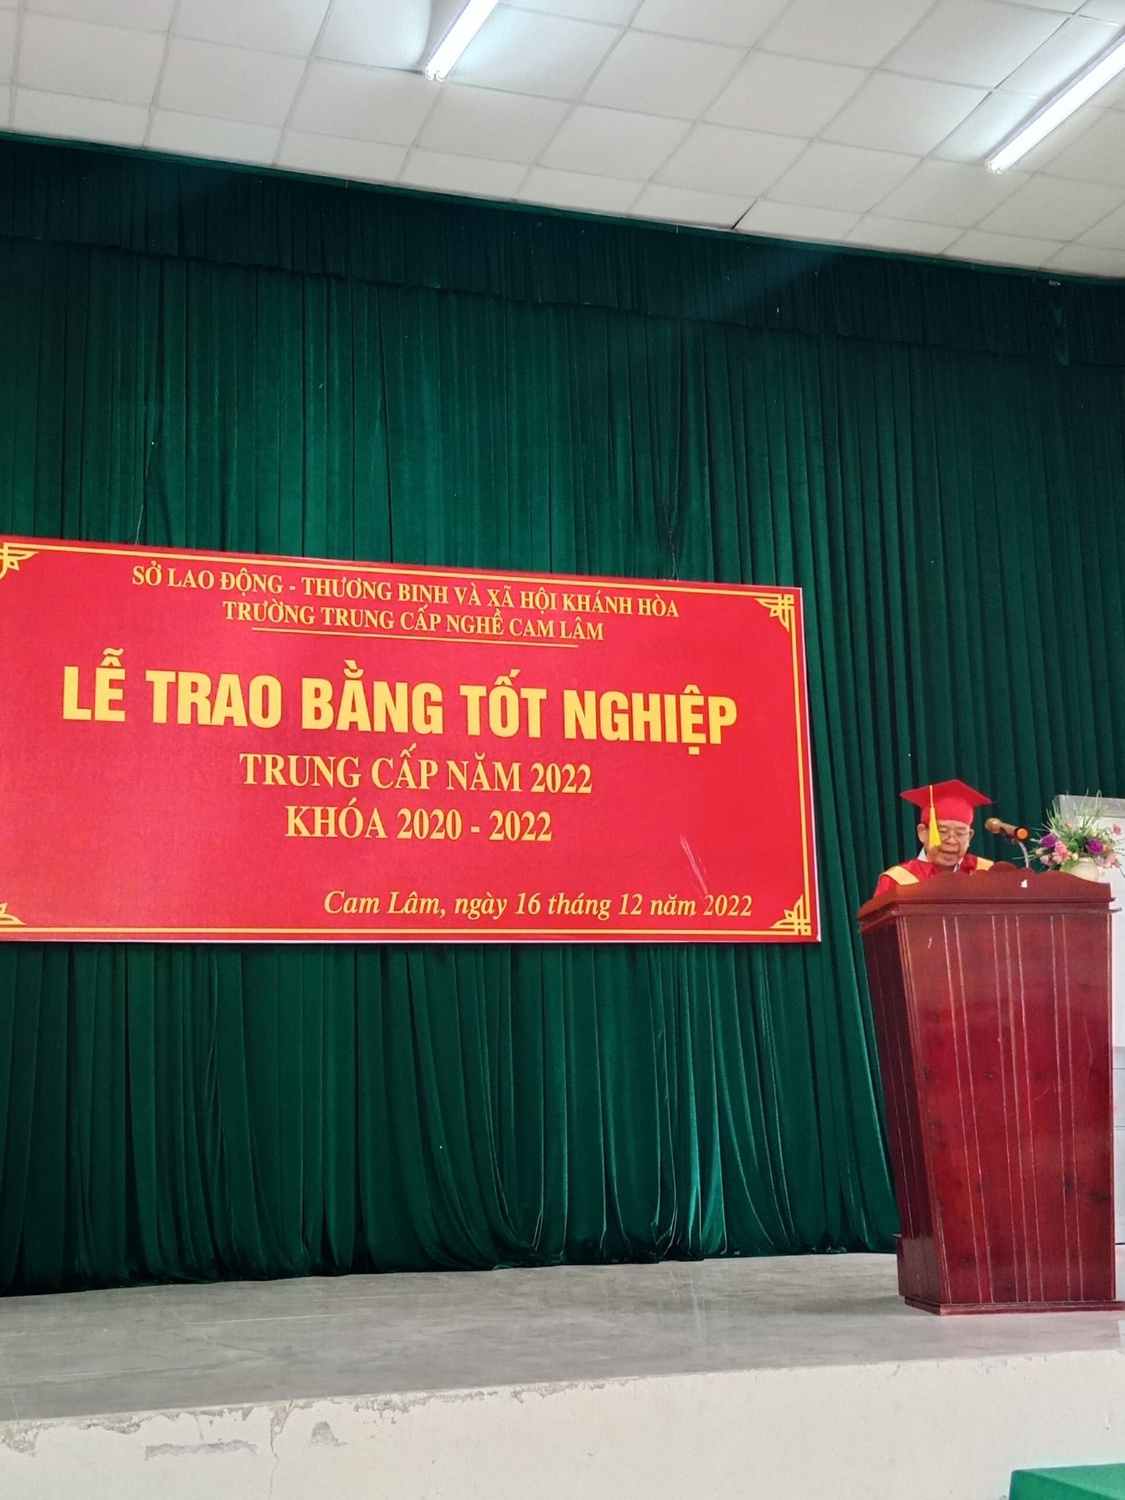 Thầy Trần Thế Kha - Phó hiệu trưởng nhà trường phát biểu tại buổi lễ